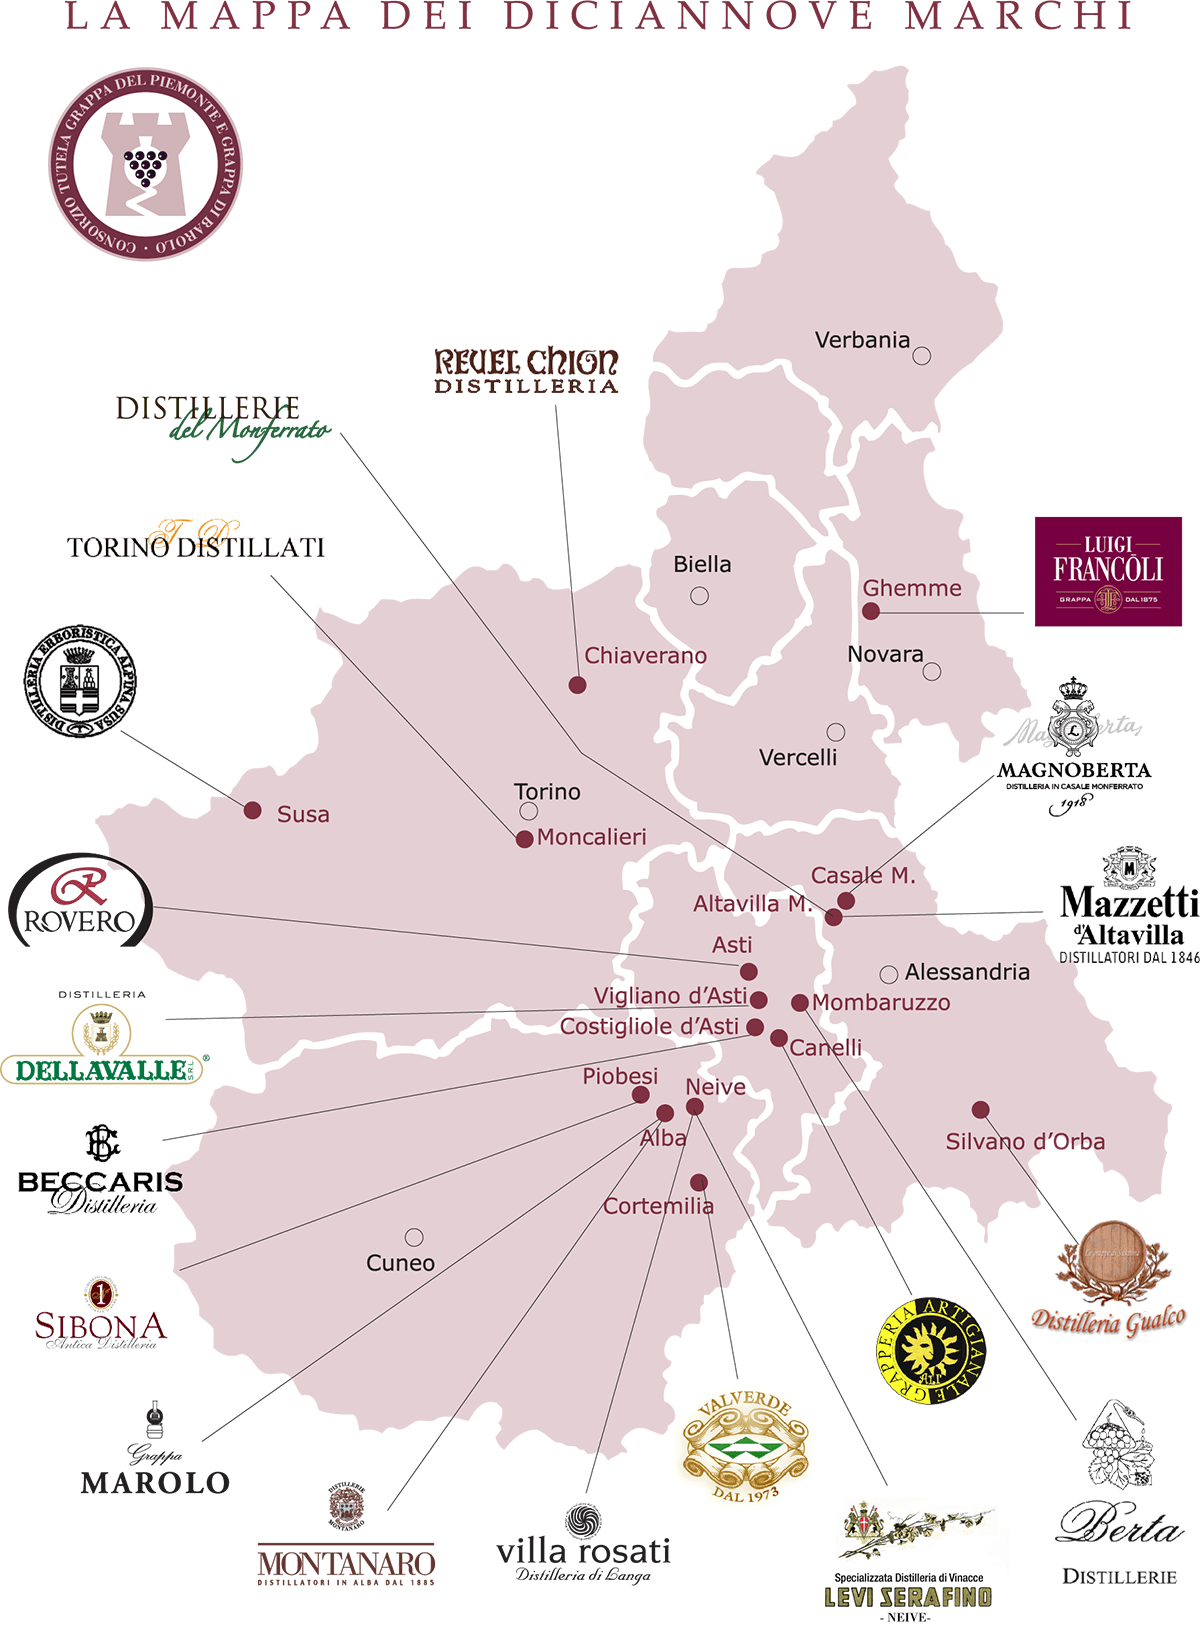 La mappa delle distillerie di Istituto Grappa Piemonte.